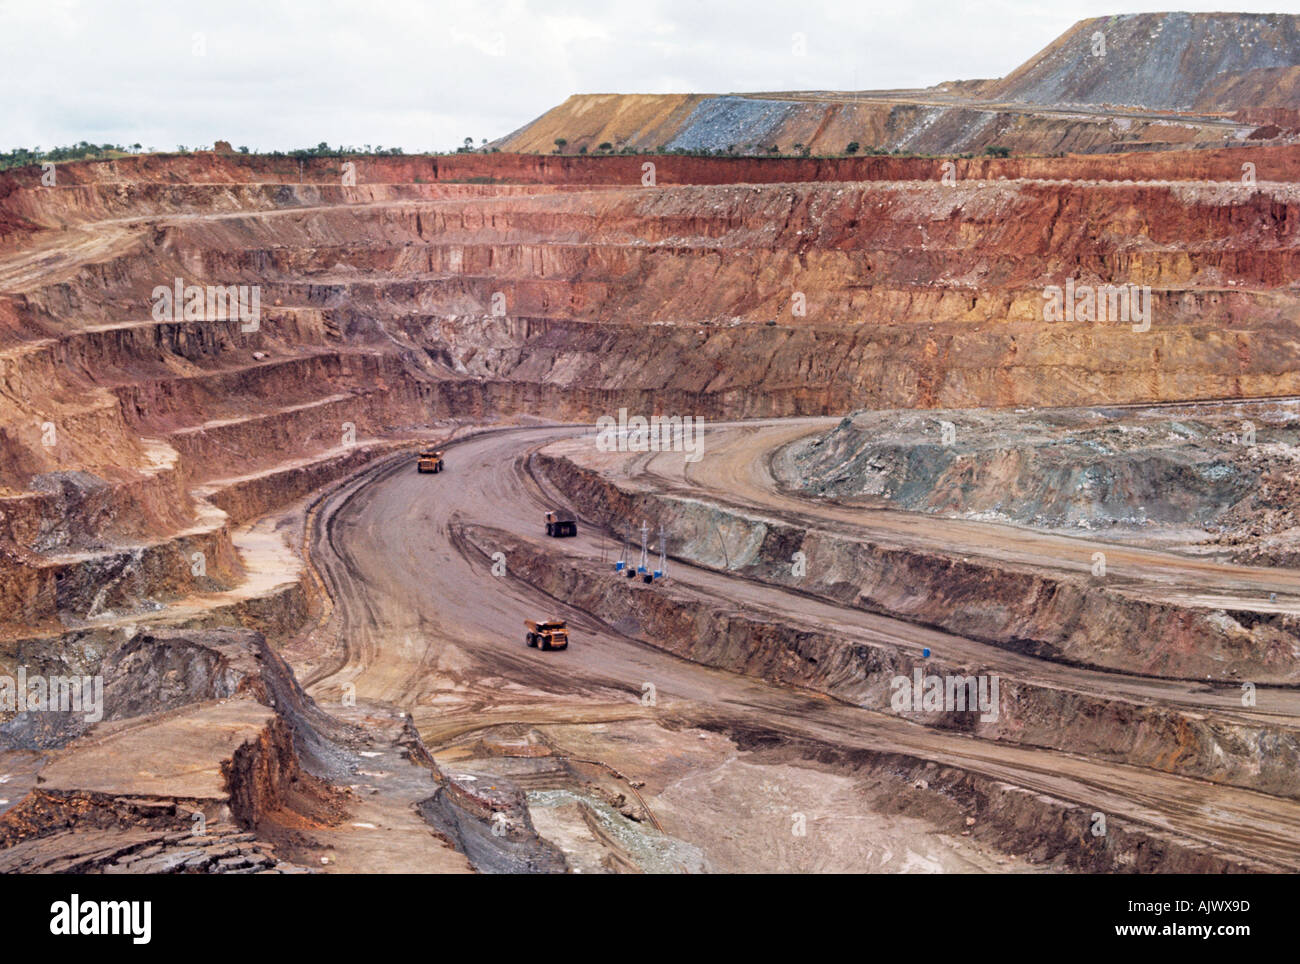 Open pit copper mine in the mineral-rich Shaba region of the Democratic Republic of Congo Stock Photo